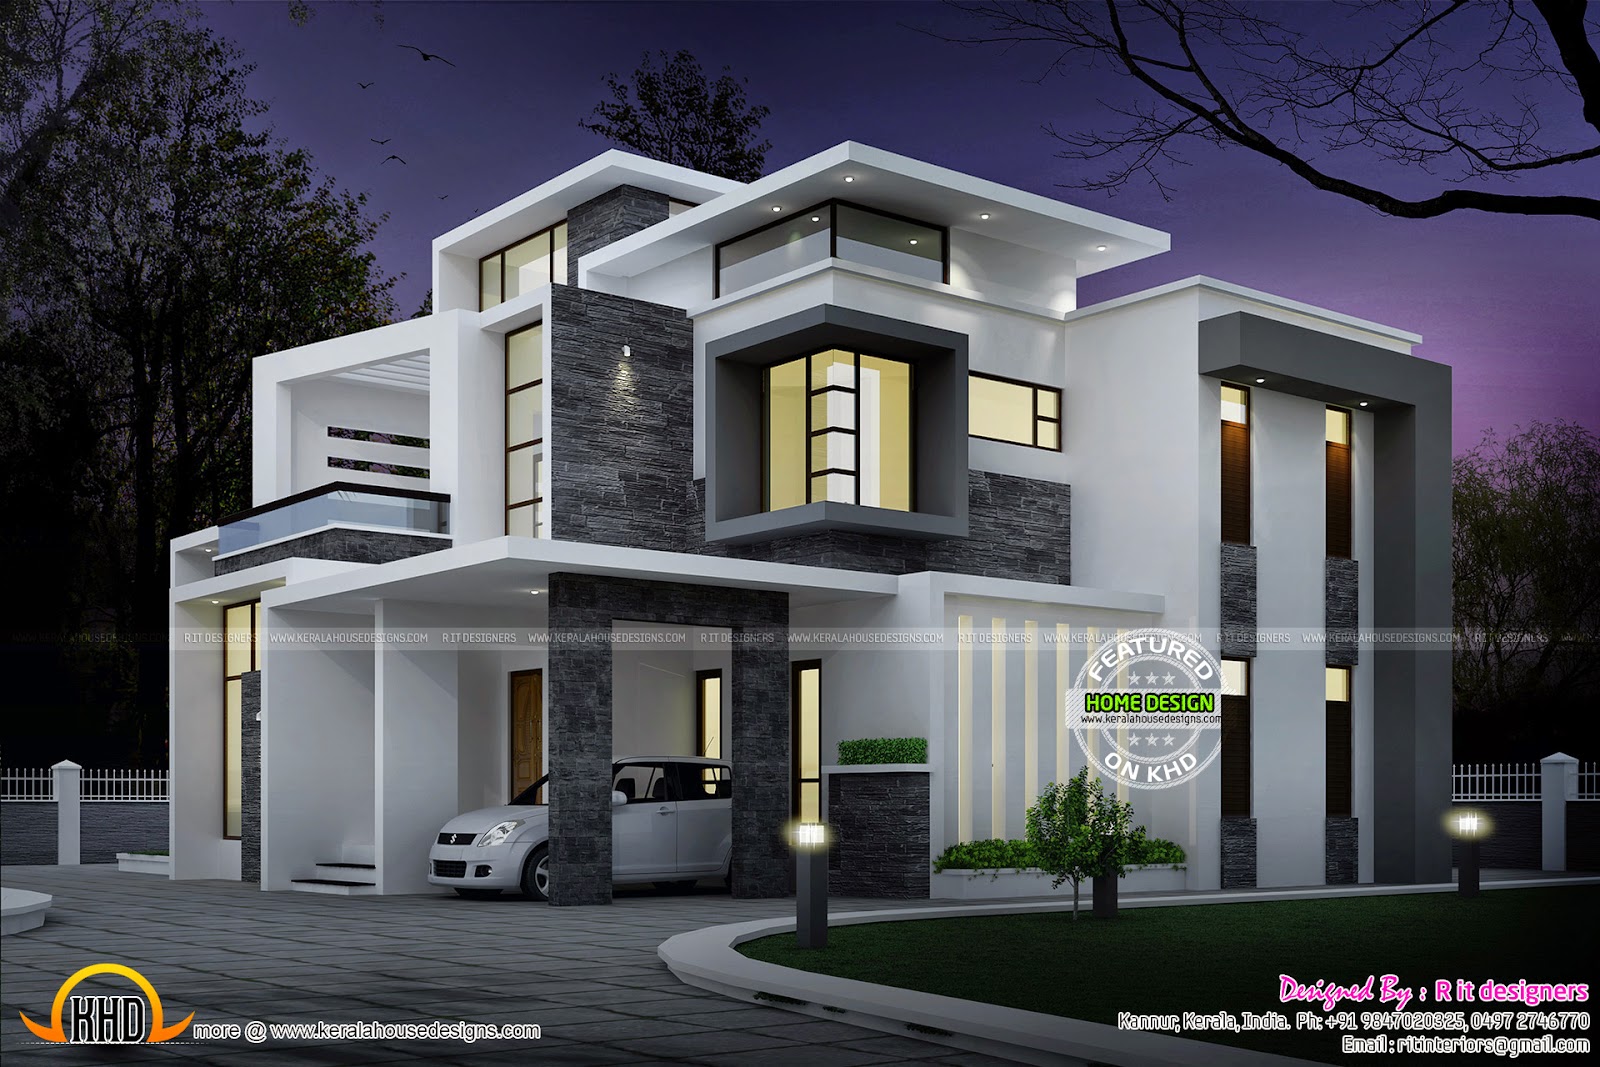 Grand contemporary home design Kerala home design and